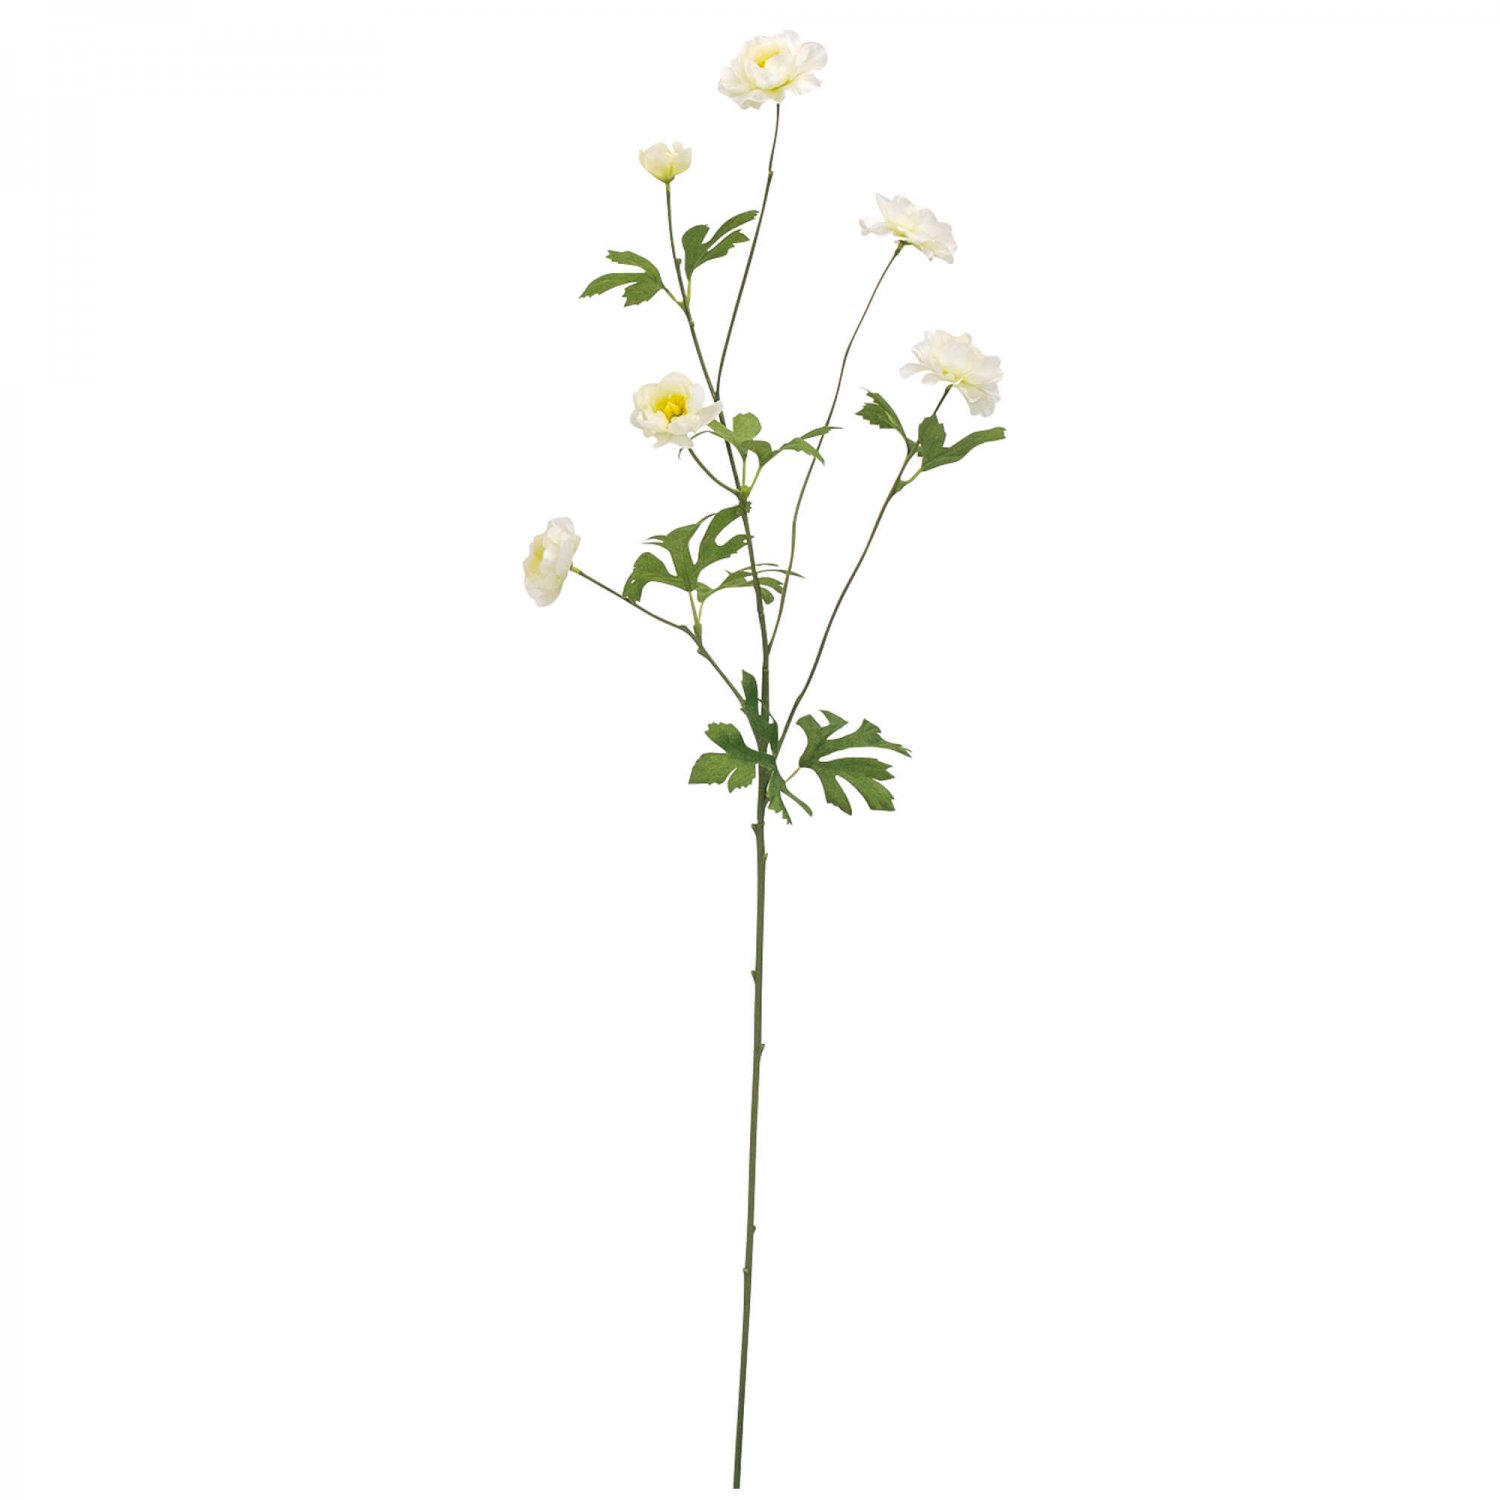 スプレー咲きラナンキュラス ホワイト 単品花材 造花 フェイクグリーン専門店プリマ 通販